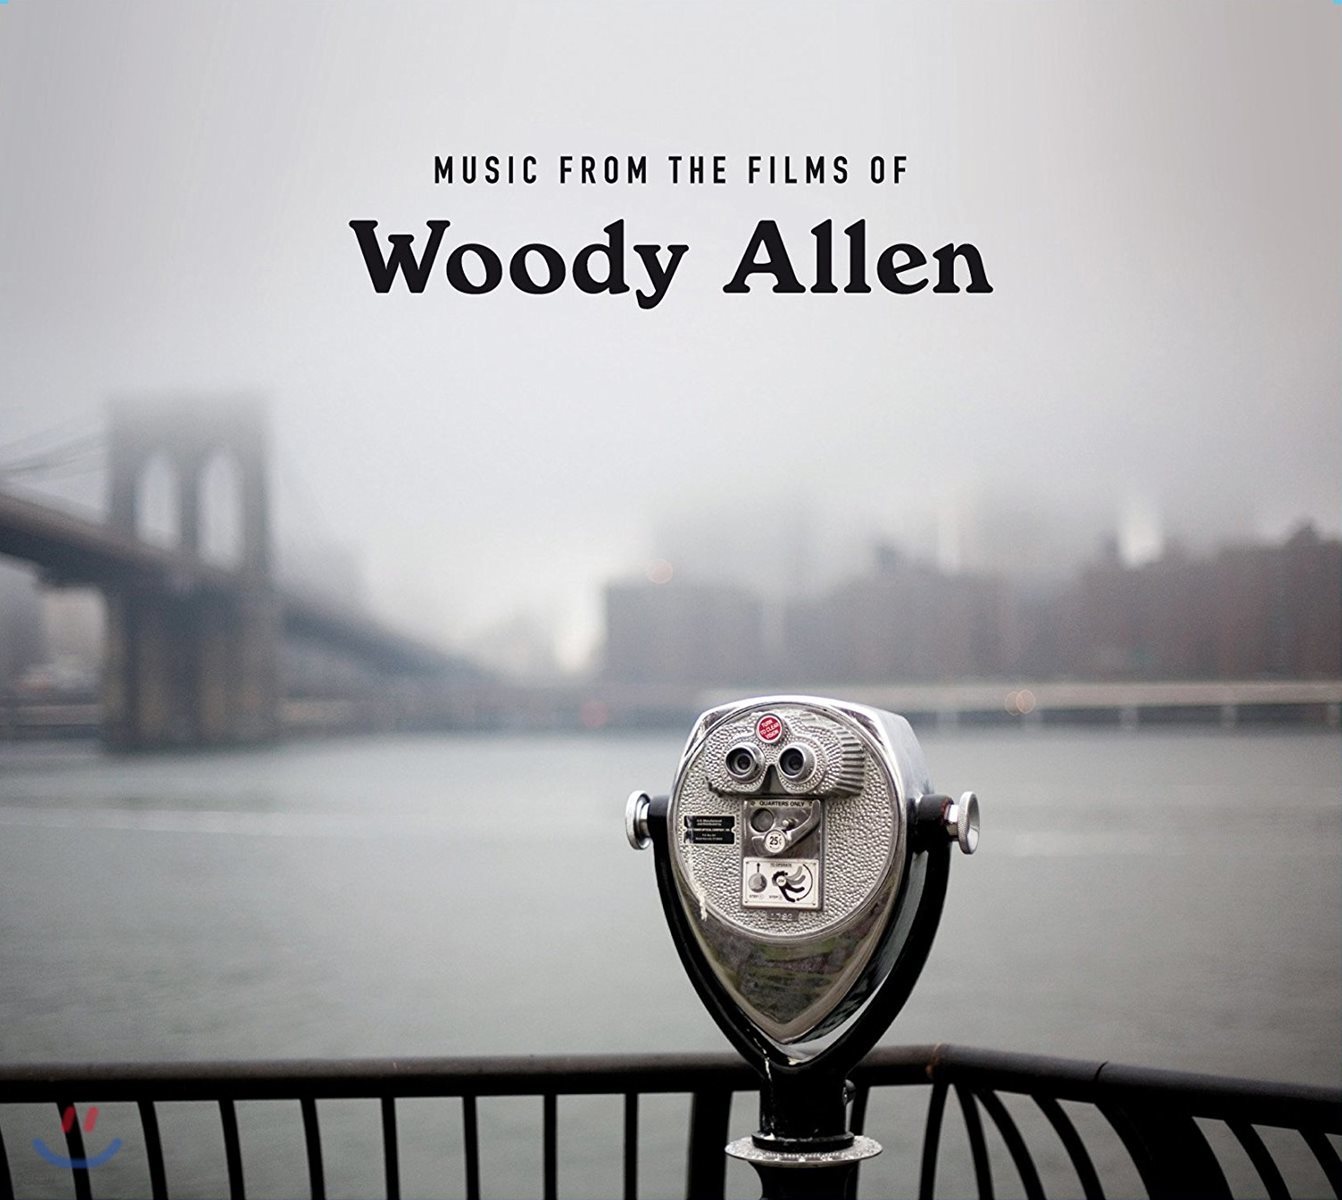 우디 앨런 영화 속 음악 (Music From the Films of Woody Allen)